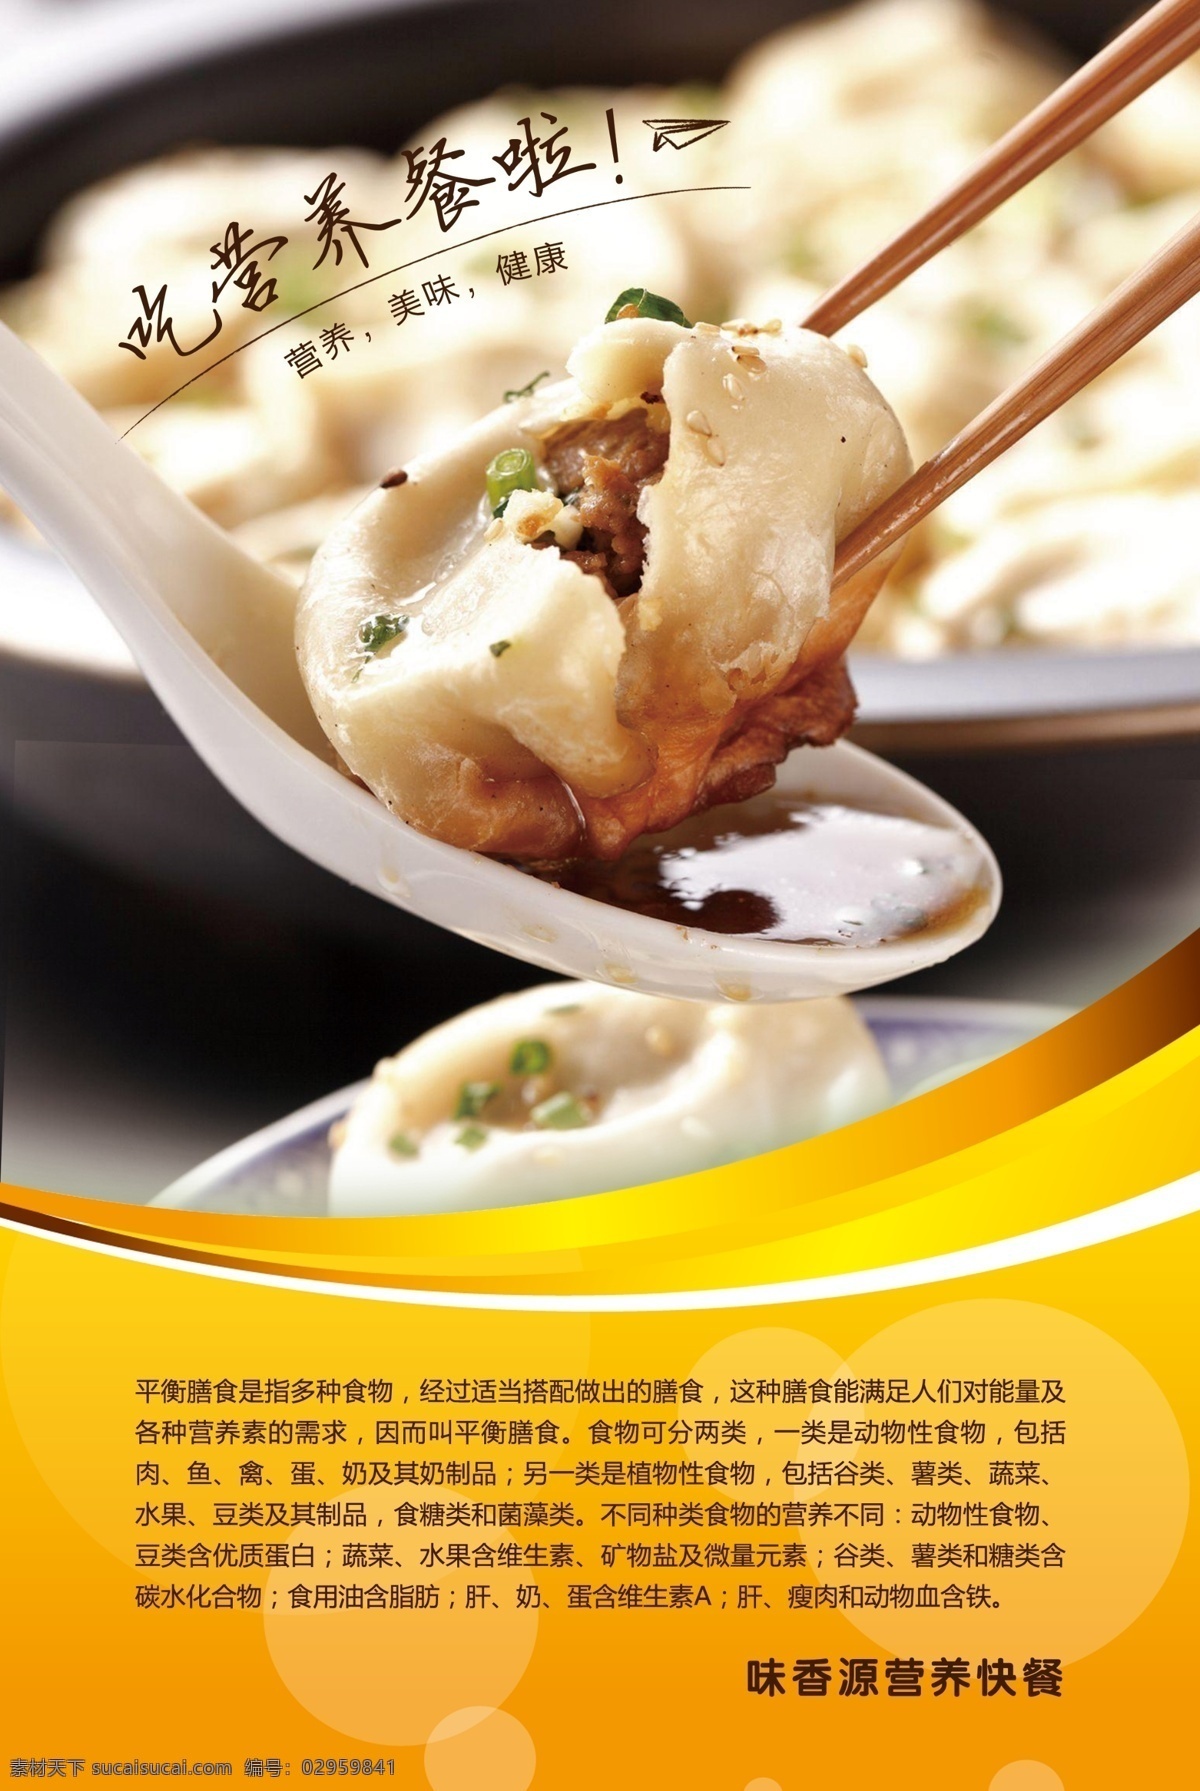 美味 营养 快餐 dm 美味营养 美食 招贴 水饺广告 海报 黄色